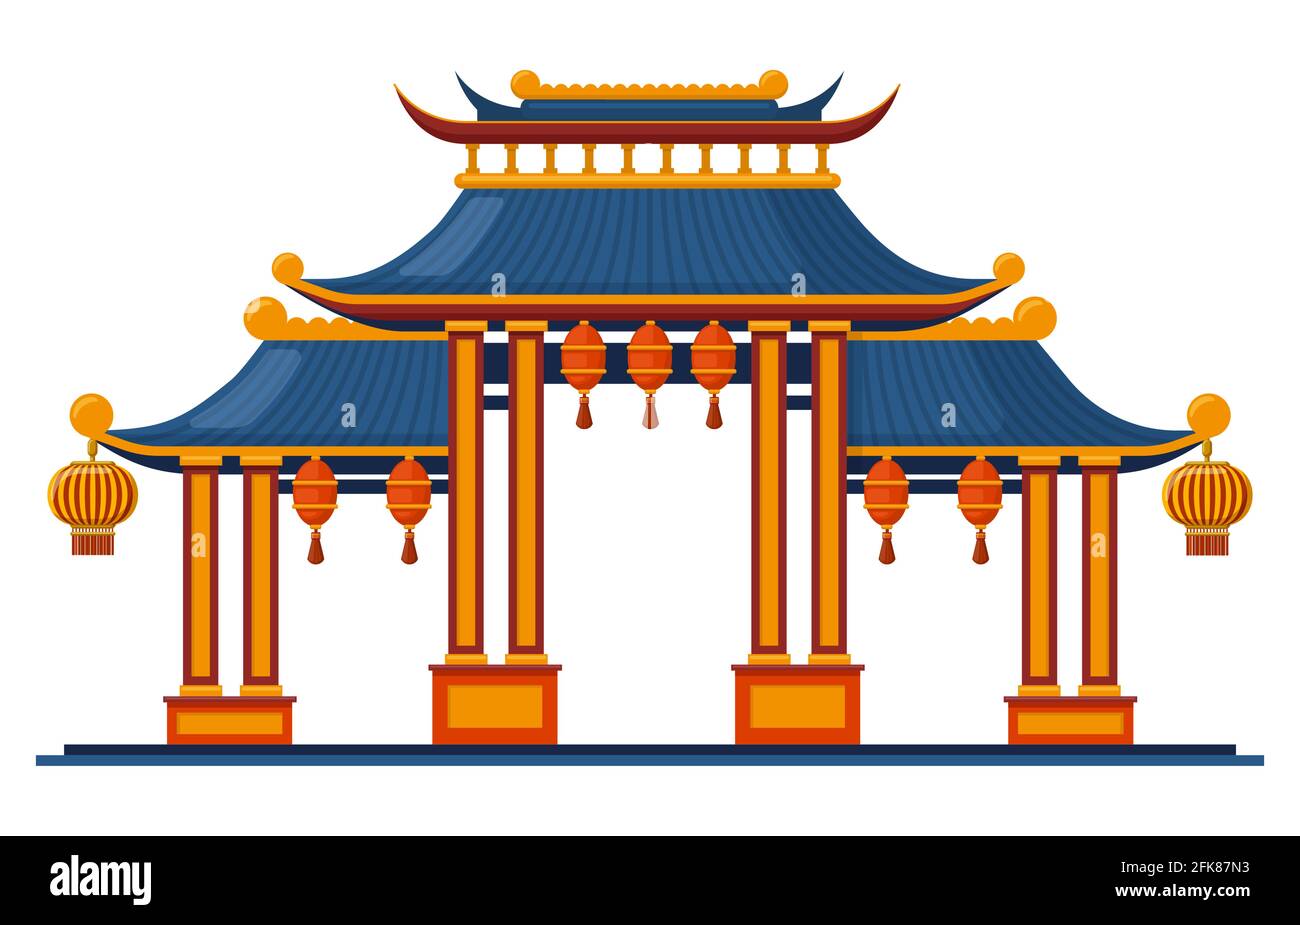 Entrée traditionnelle chinoise. Illustration vectorielle isolée de la grille de pagode architecturale traditionnelle asiatique. Entrée orientale avec lanternes suspendues Illustration de Vecteur